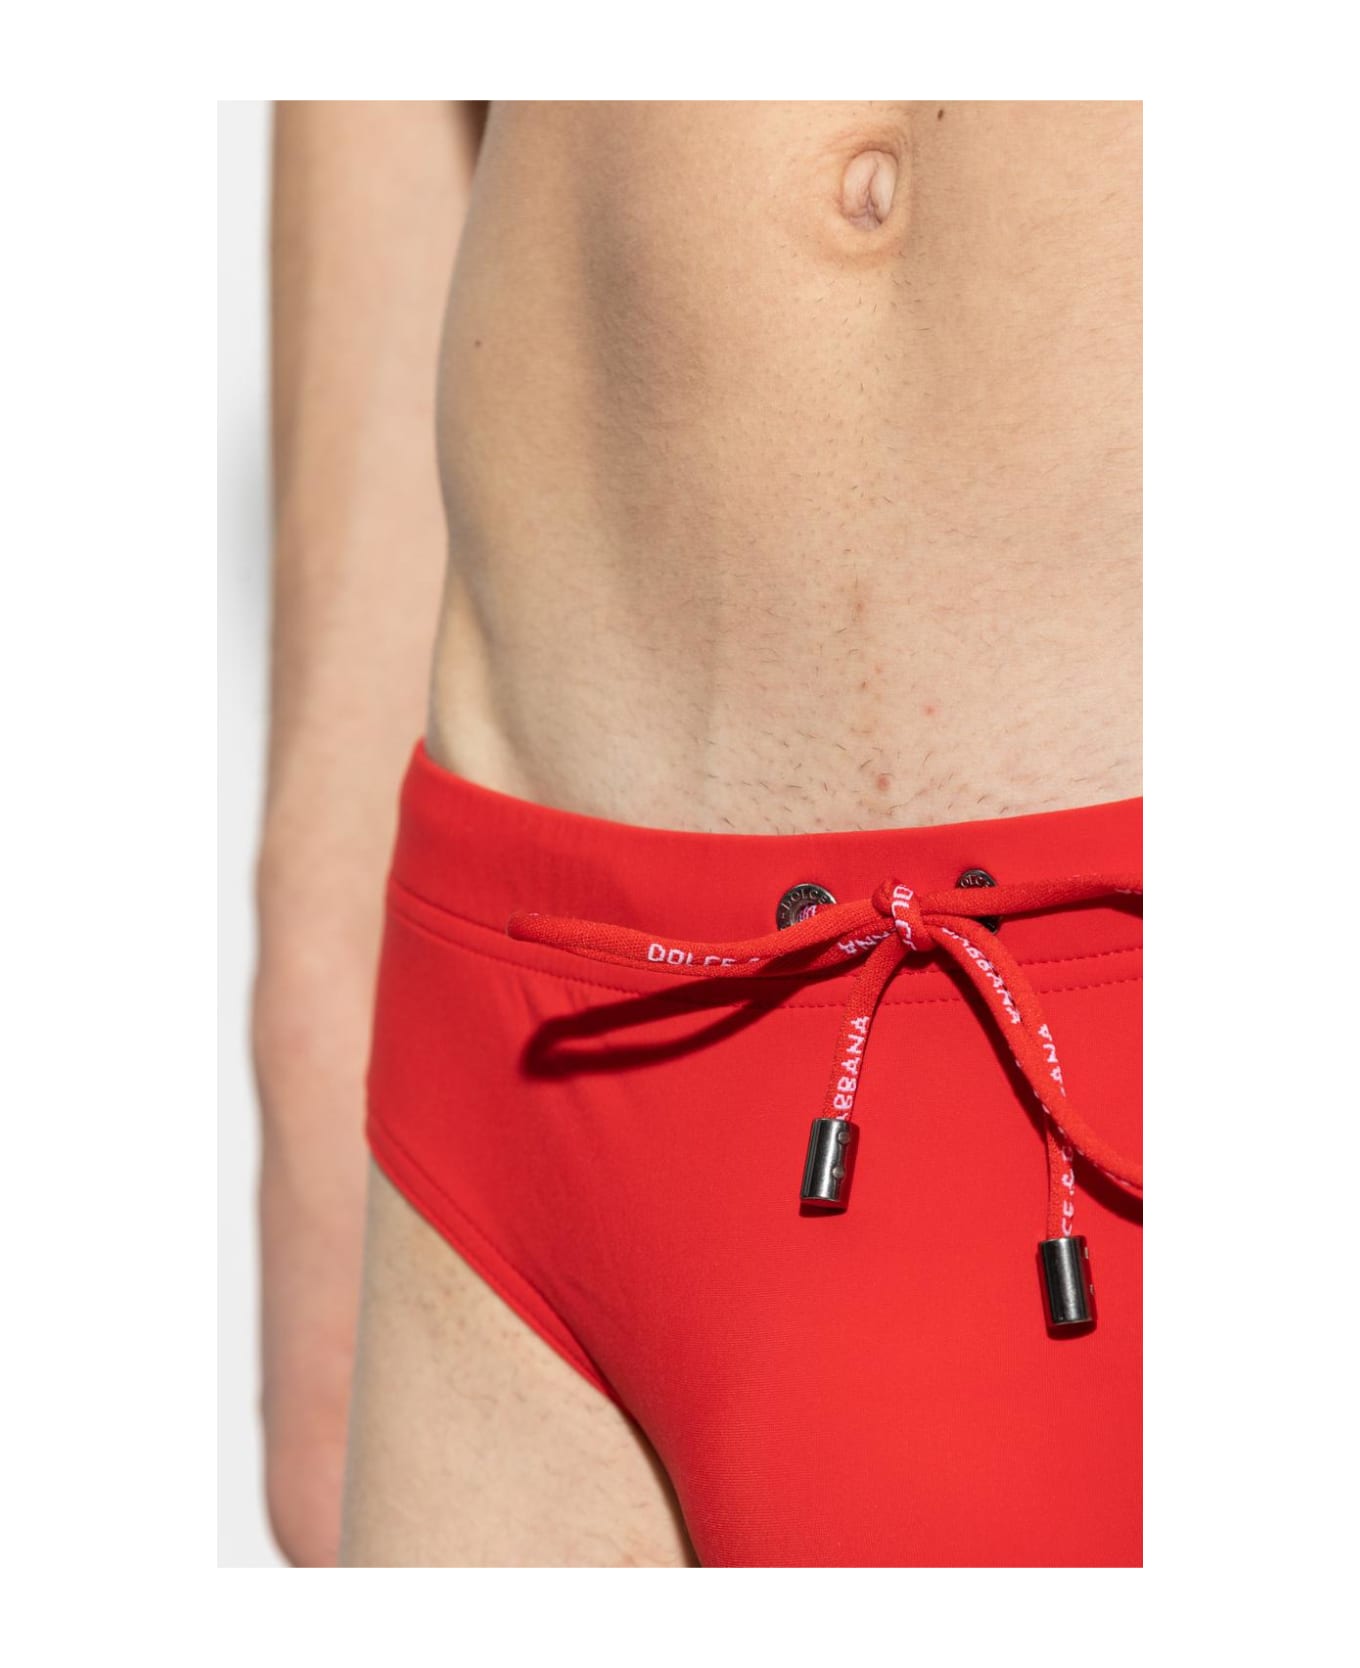 Dolce & Gabbana Swimming Briefs - Rosso